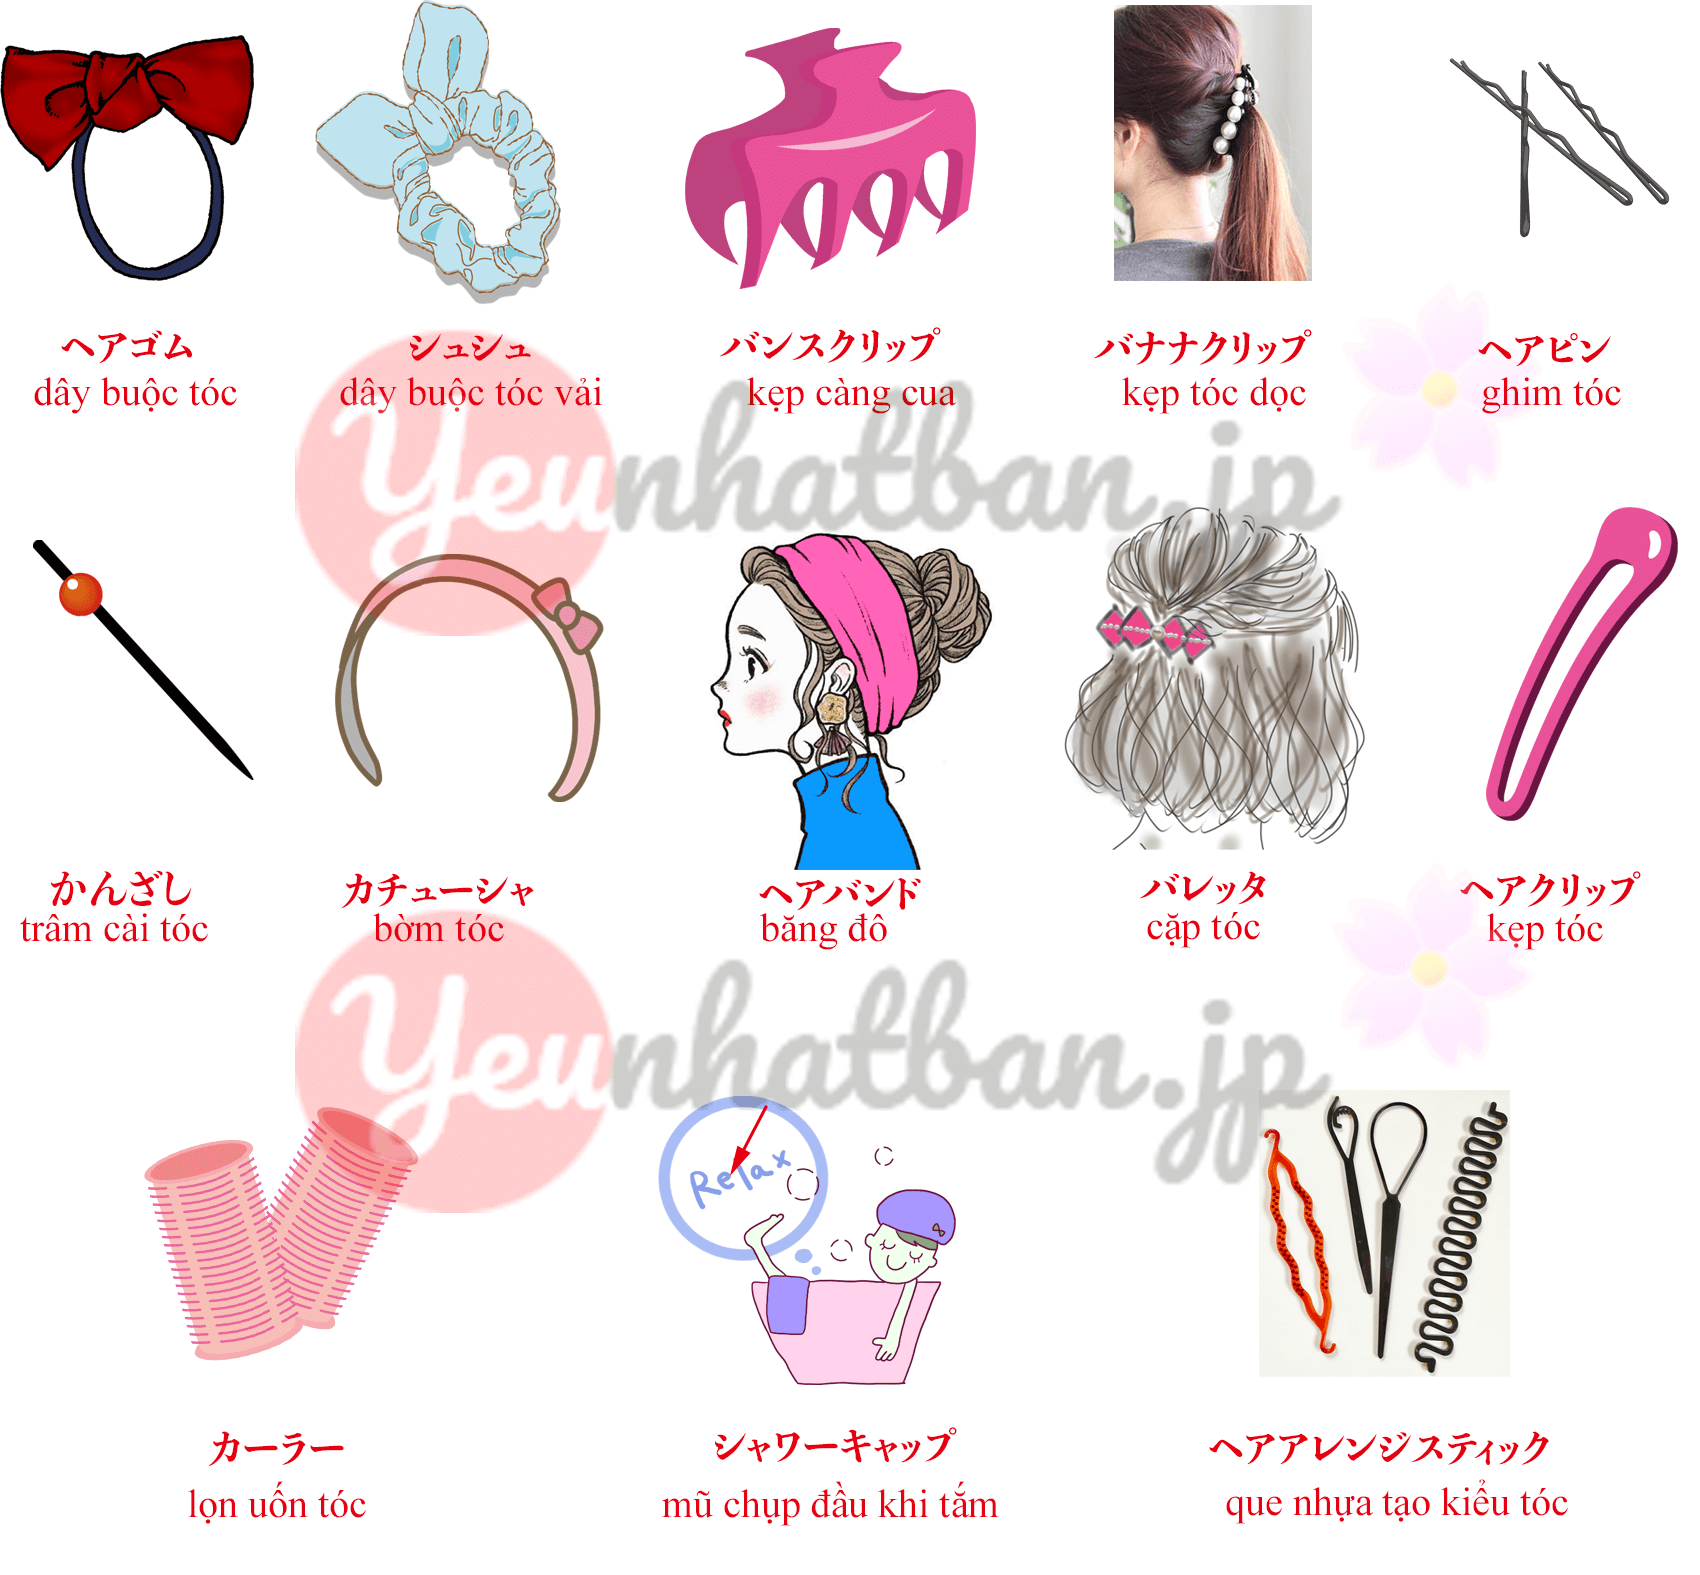 Phong cách tóc Yêu Nhật Bản được yêu thích bởi tính độc đáo và cá tính. Hãy cùng khám phá hình ảnh về những kiểu tóc độc đáo này để tạo nên sự khác biệt trong phong cách của bạn.